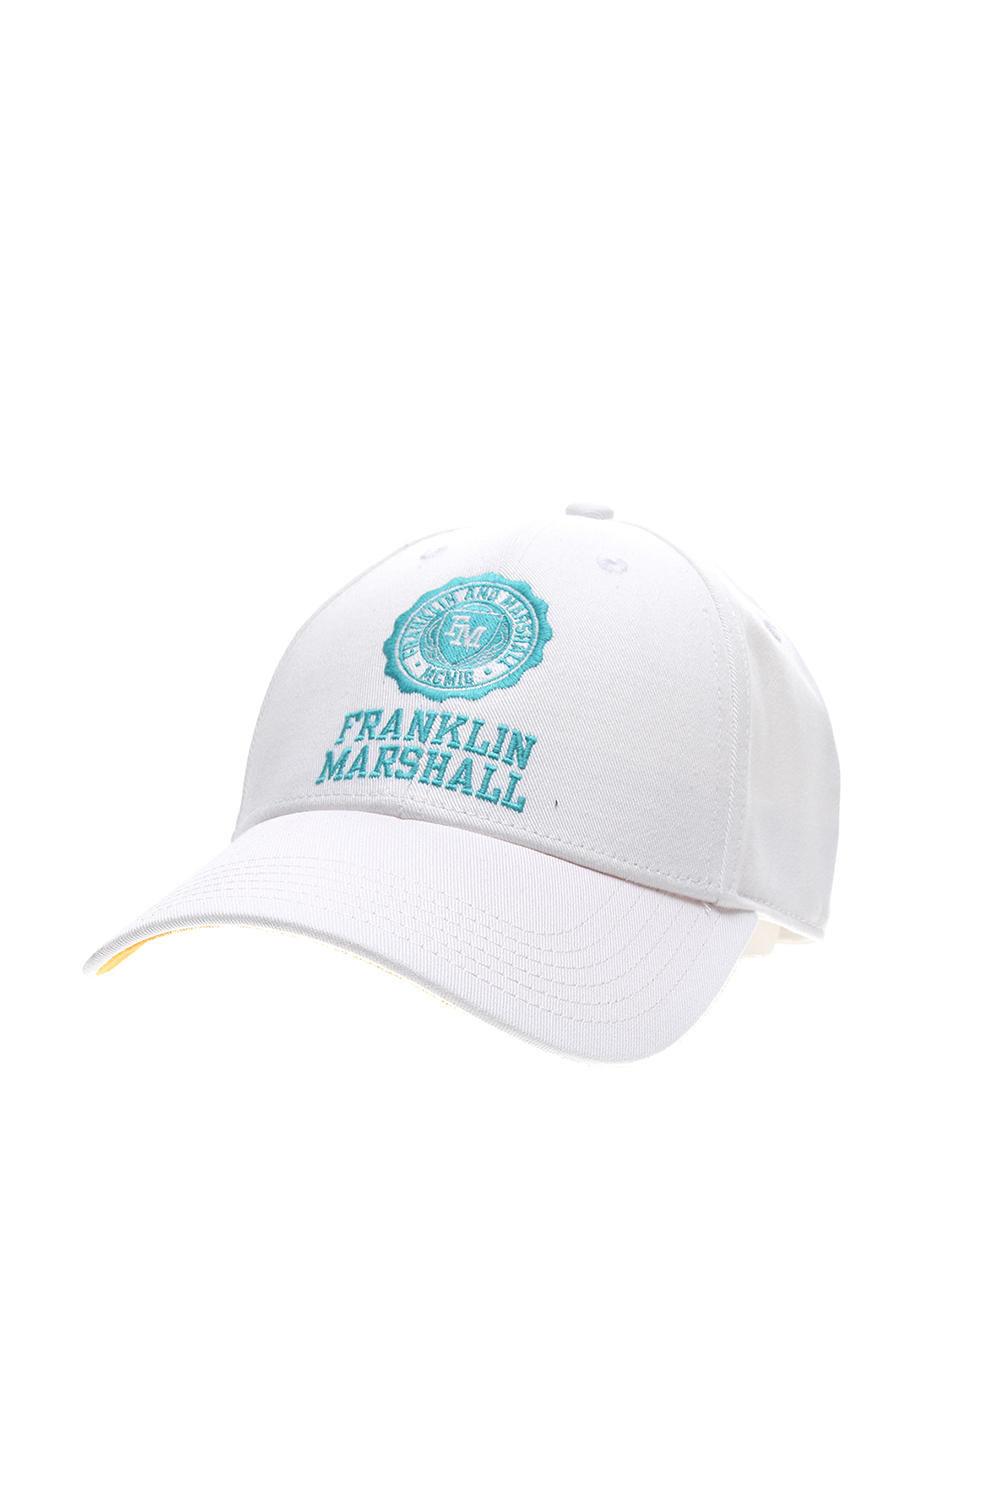 FRANKLIN & MARSHALL – Ανδρικο καπελο baseball FRANKLIN & MARSHALL λευκο